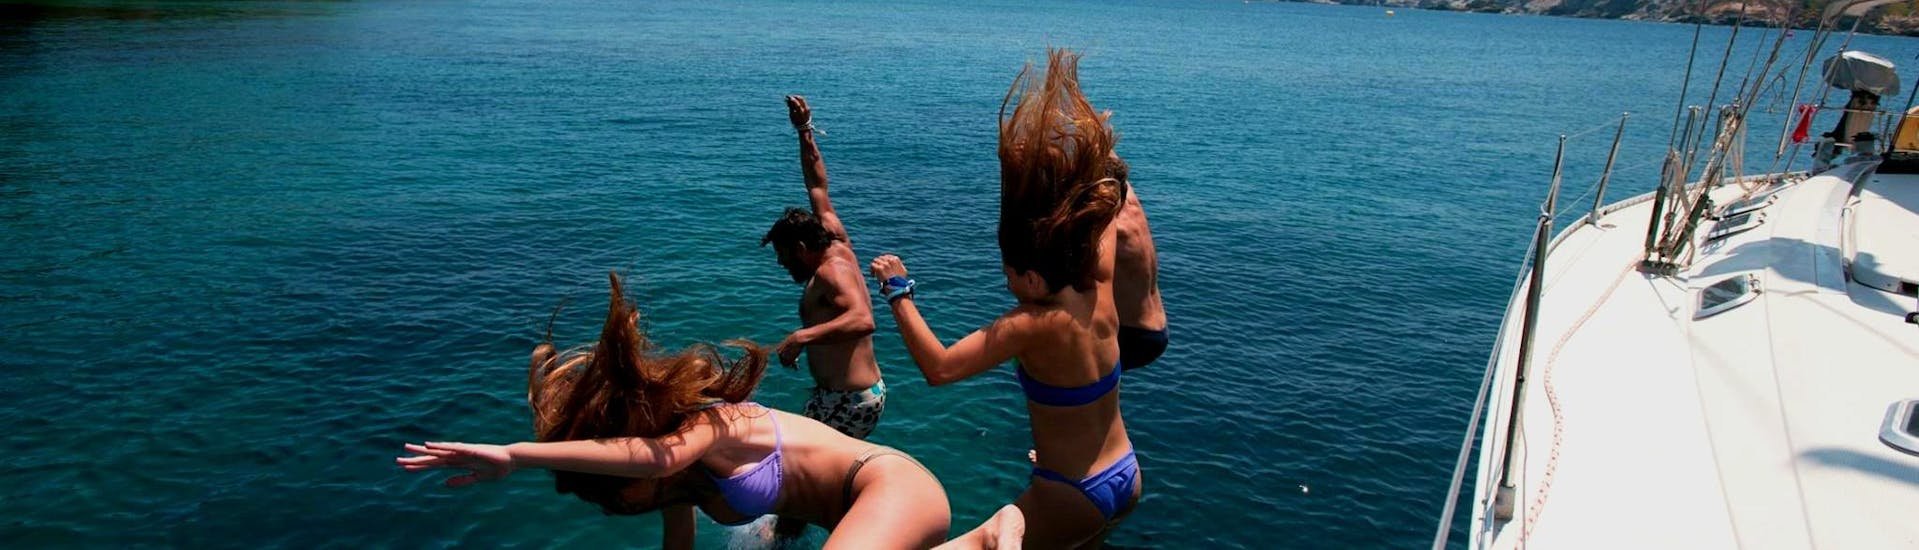 Groupe d'amis sautant du bateau lors d'une balade en bateau à Dia depuis Heraklion avec Altersail. 